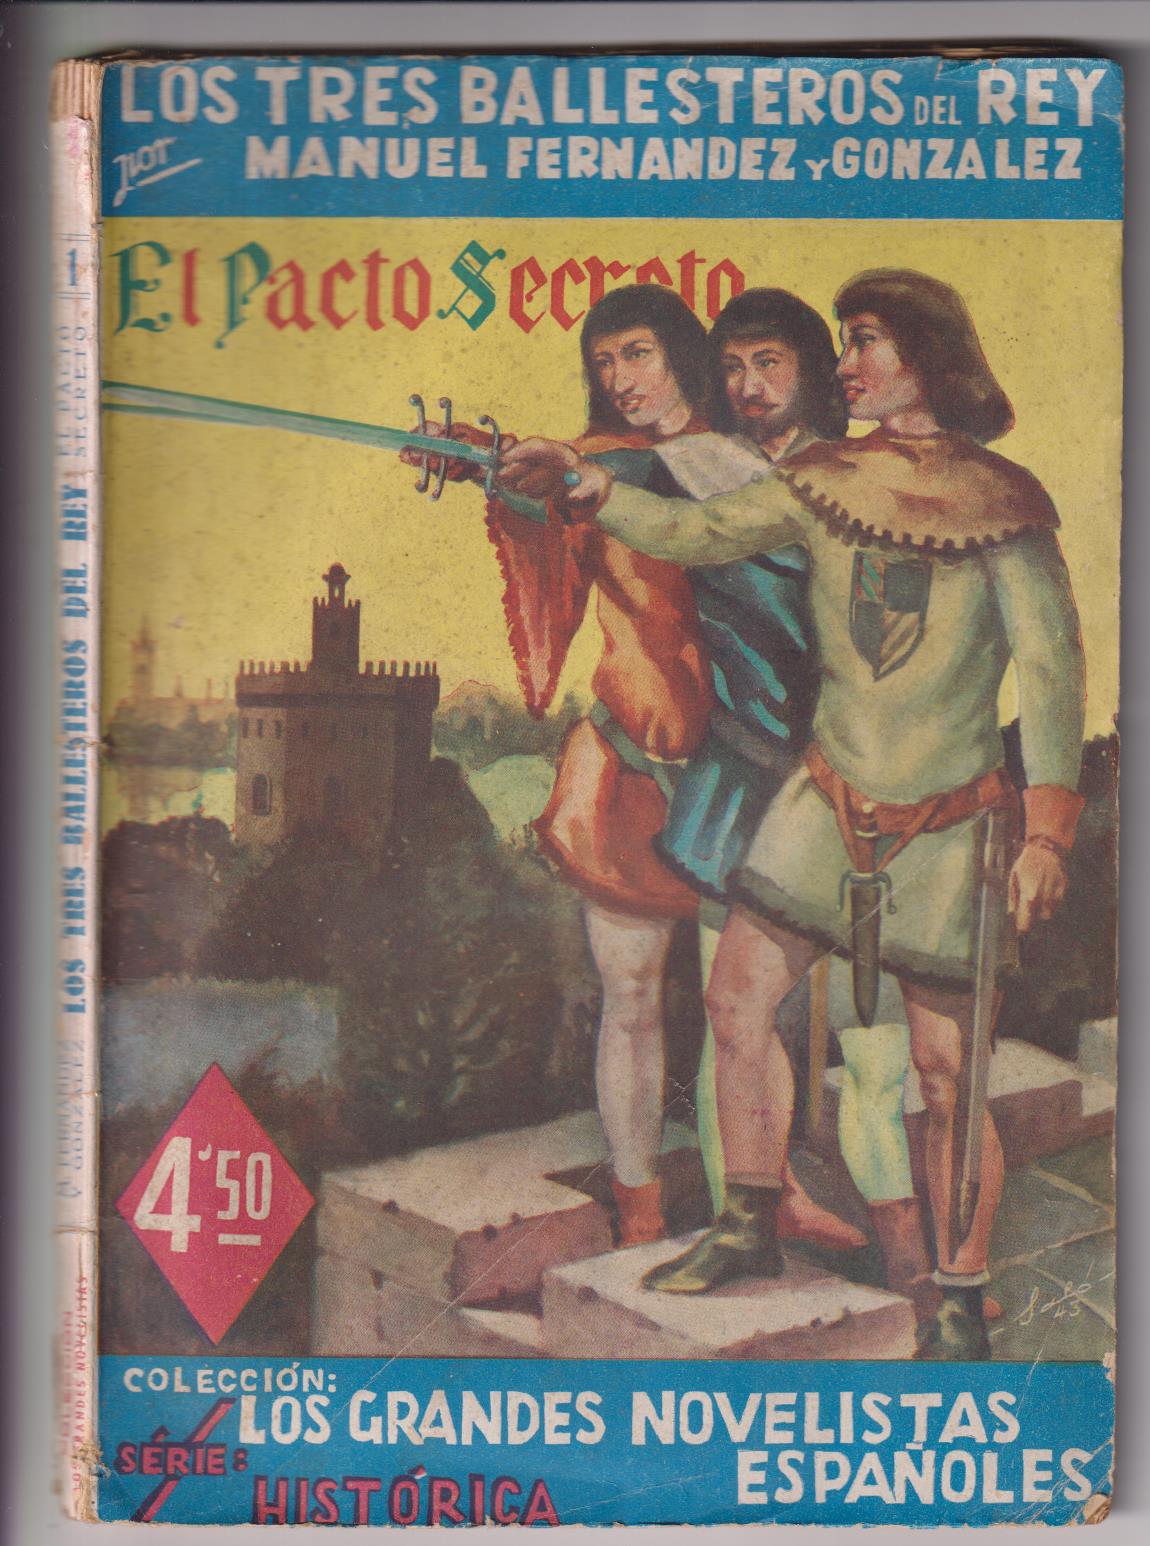 Grandes Novelistas Españoles nº 1. Los Tres Ballestero del Rey, El Pacto Secreto. 1944